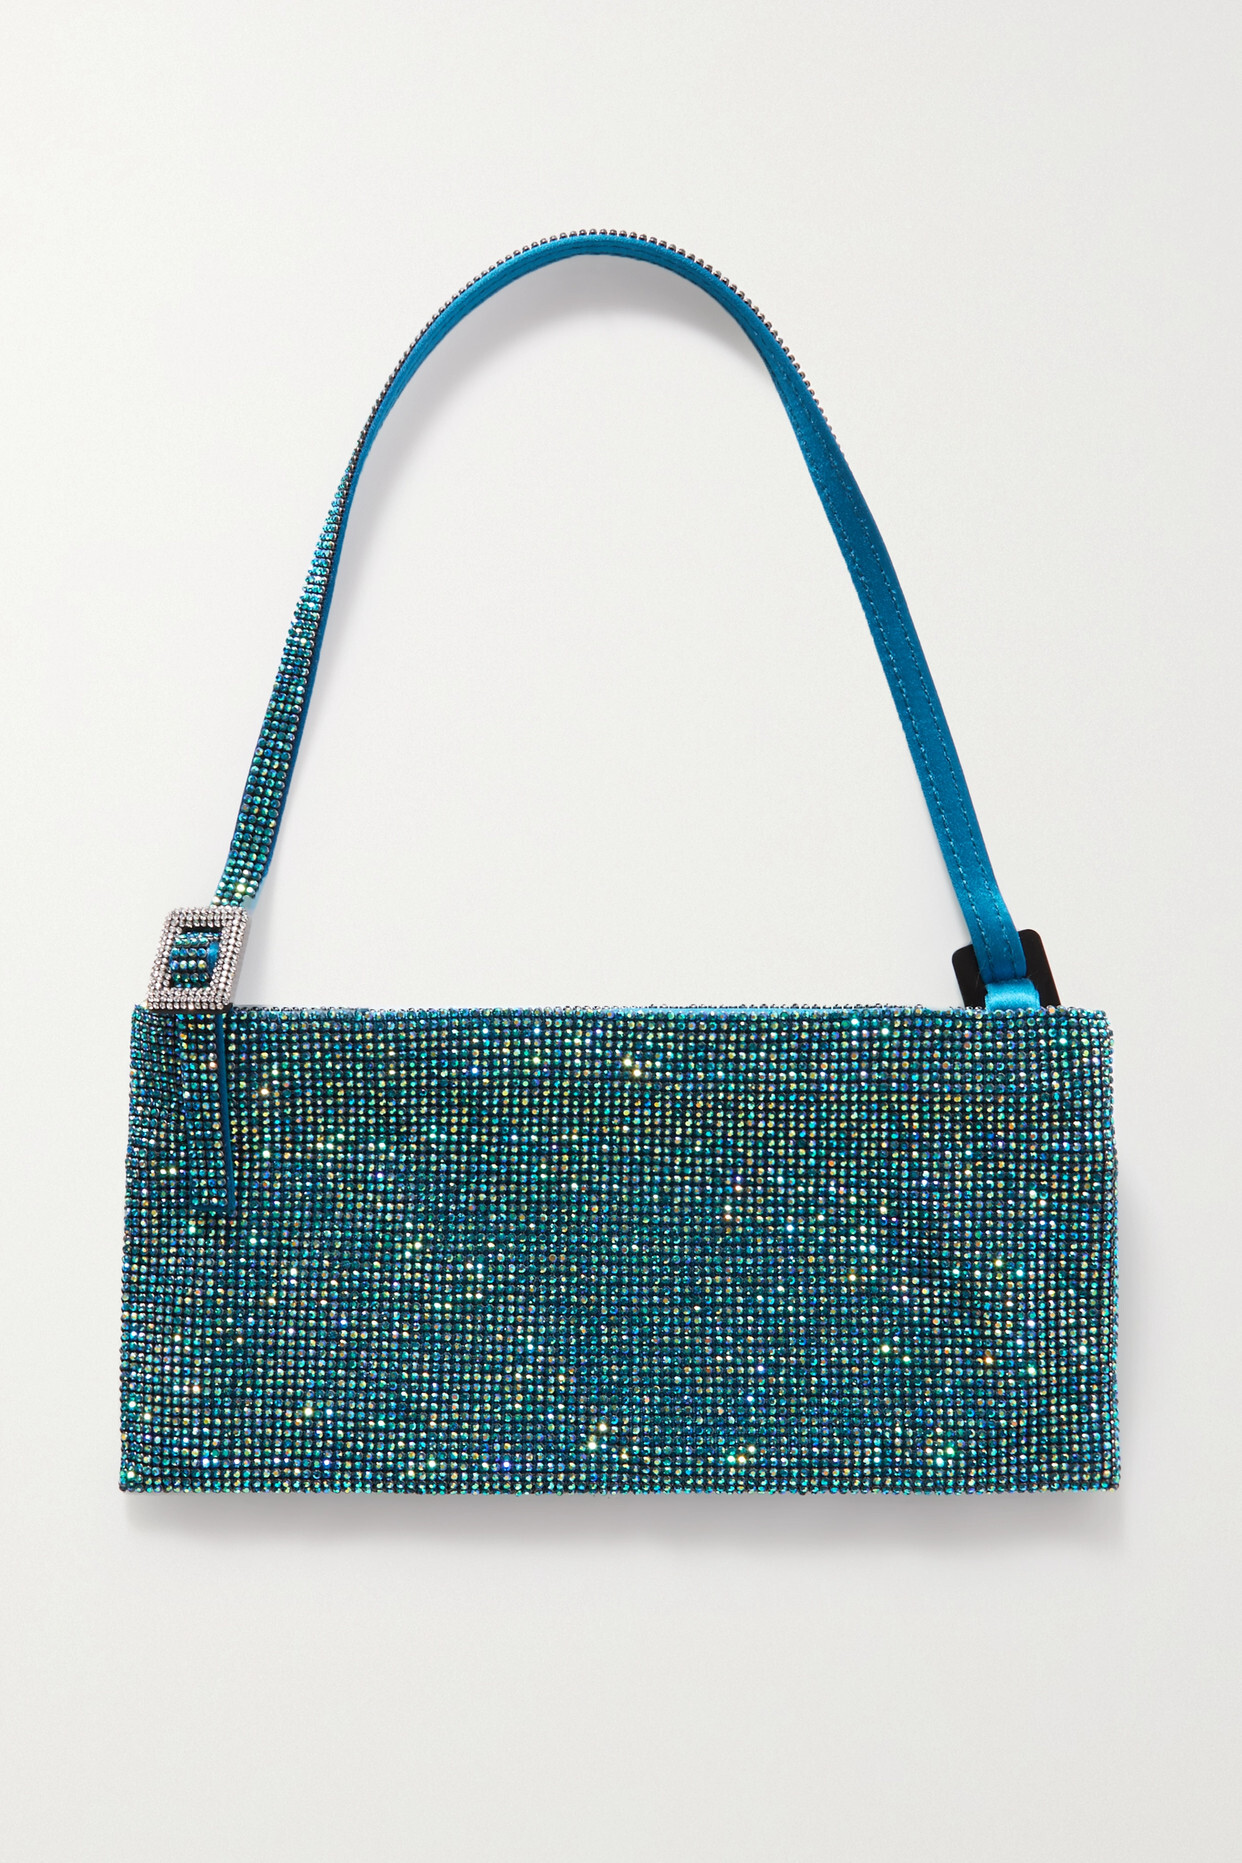 Benedetta Bruzziches - Your Best Friend La Grande Crystal-embellished Silk-satin Shoulder Bag - Blue